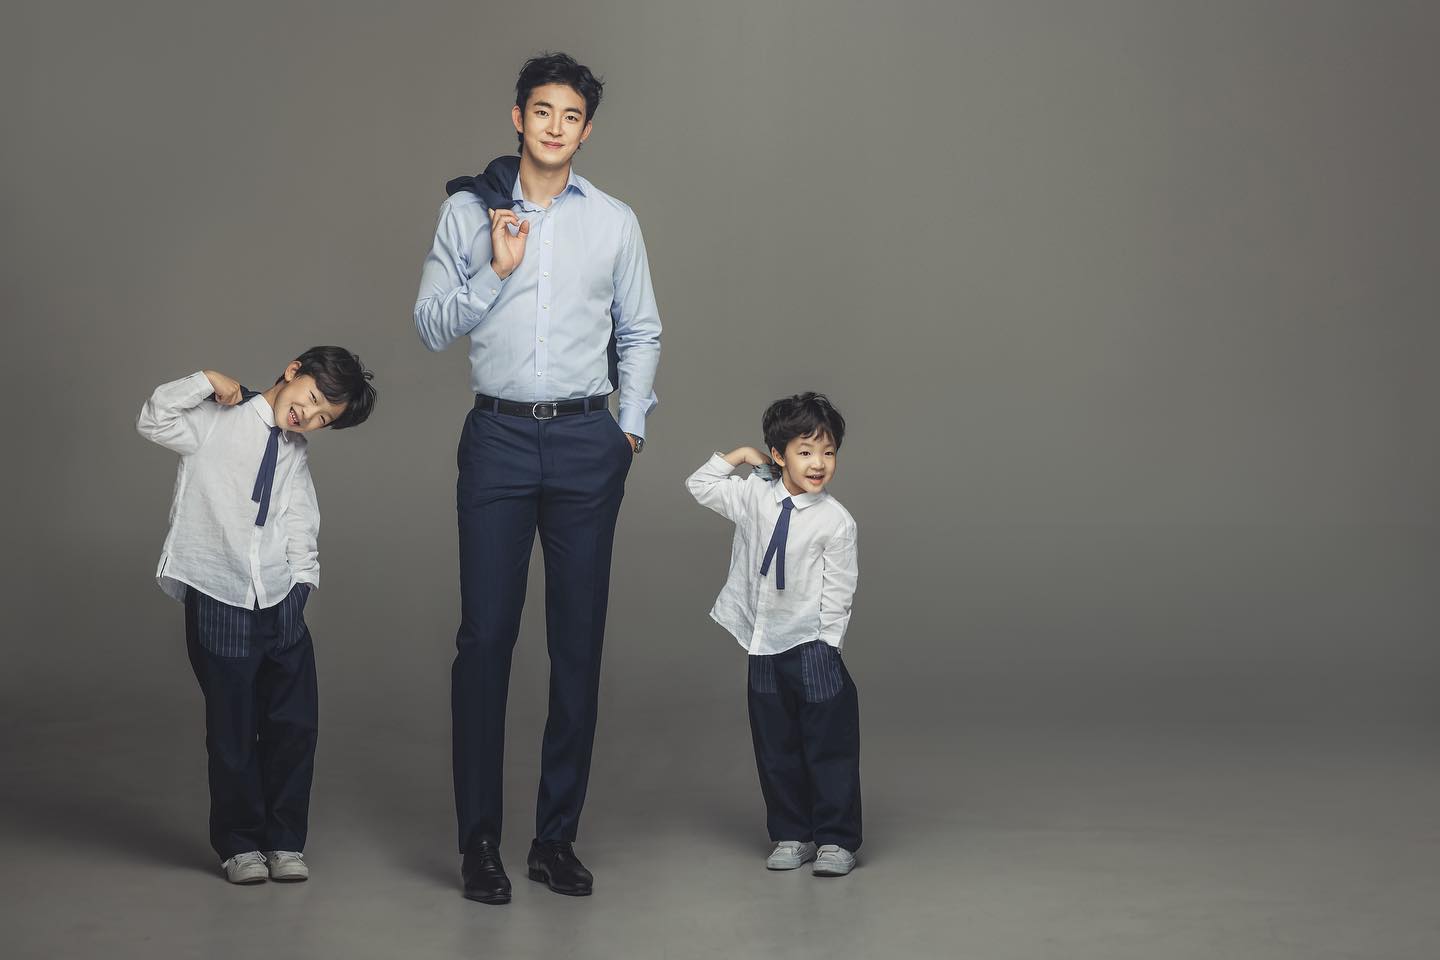 그녀의 남편, 농구선수 강병현씨와 그녀의 두 아들들. 194cm인 남편의 키 만큼 아들들도 컸으면 하는 바램이 있다고 한다.